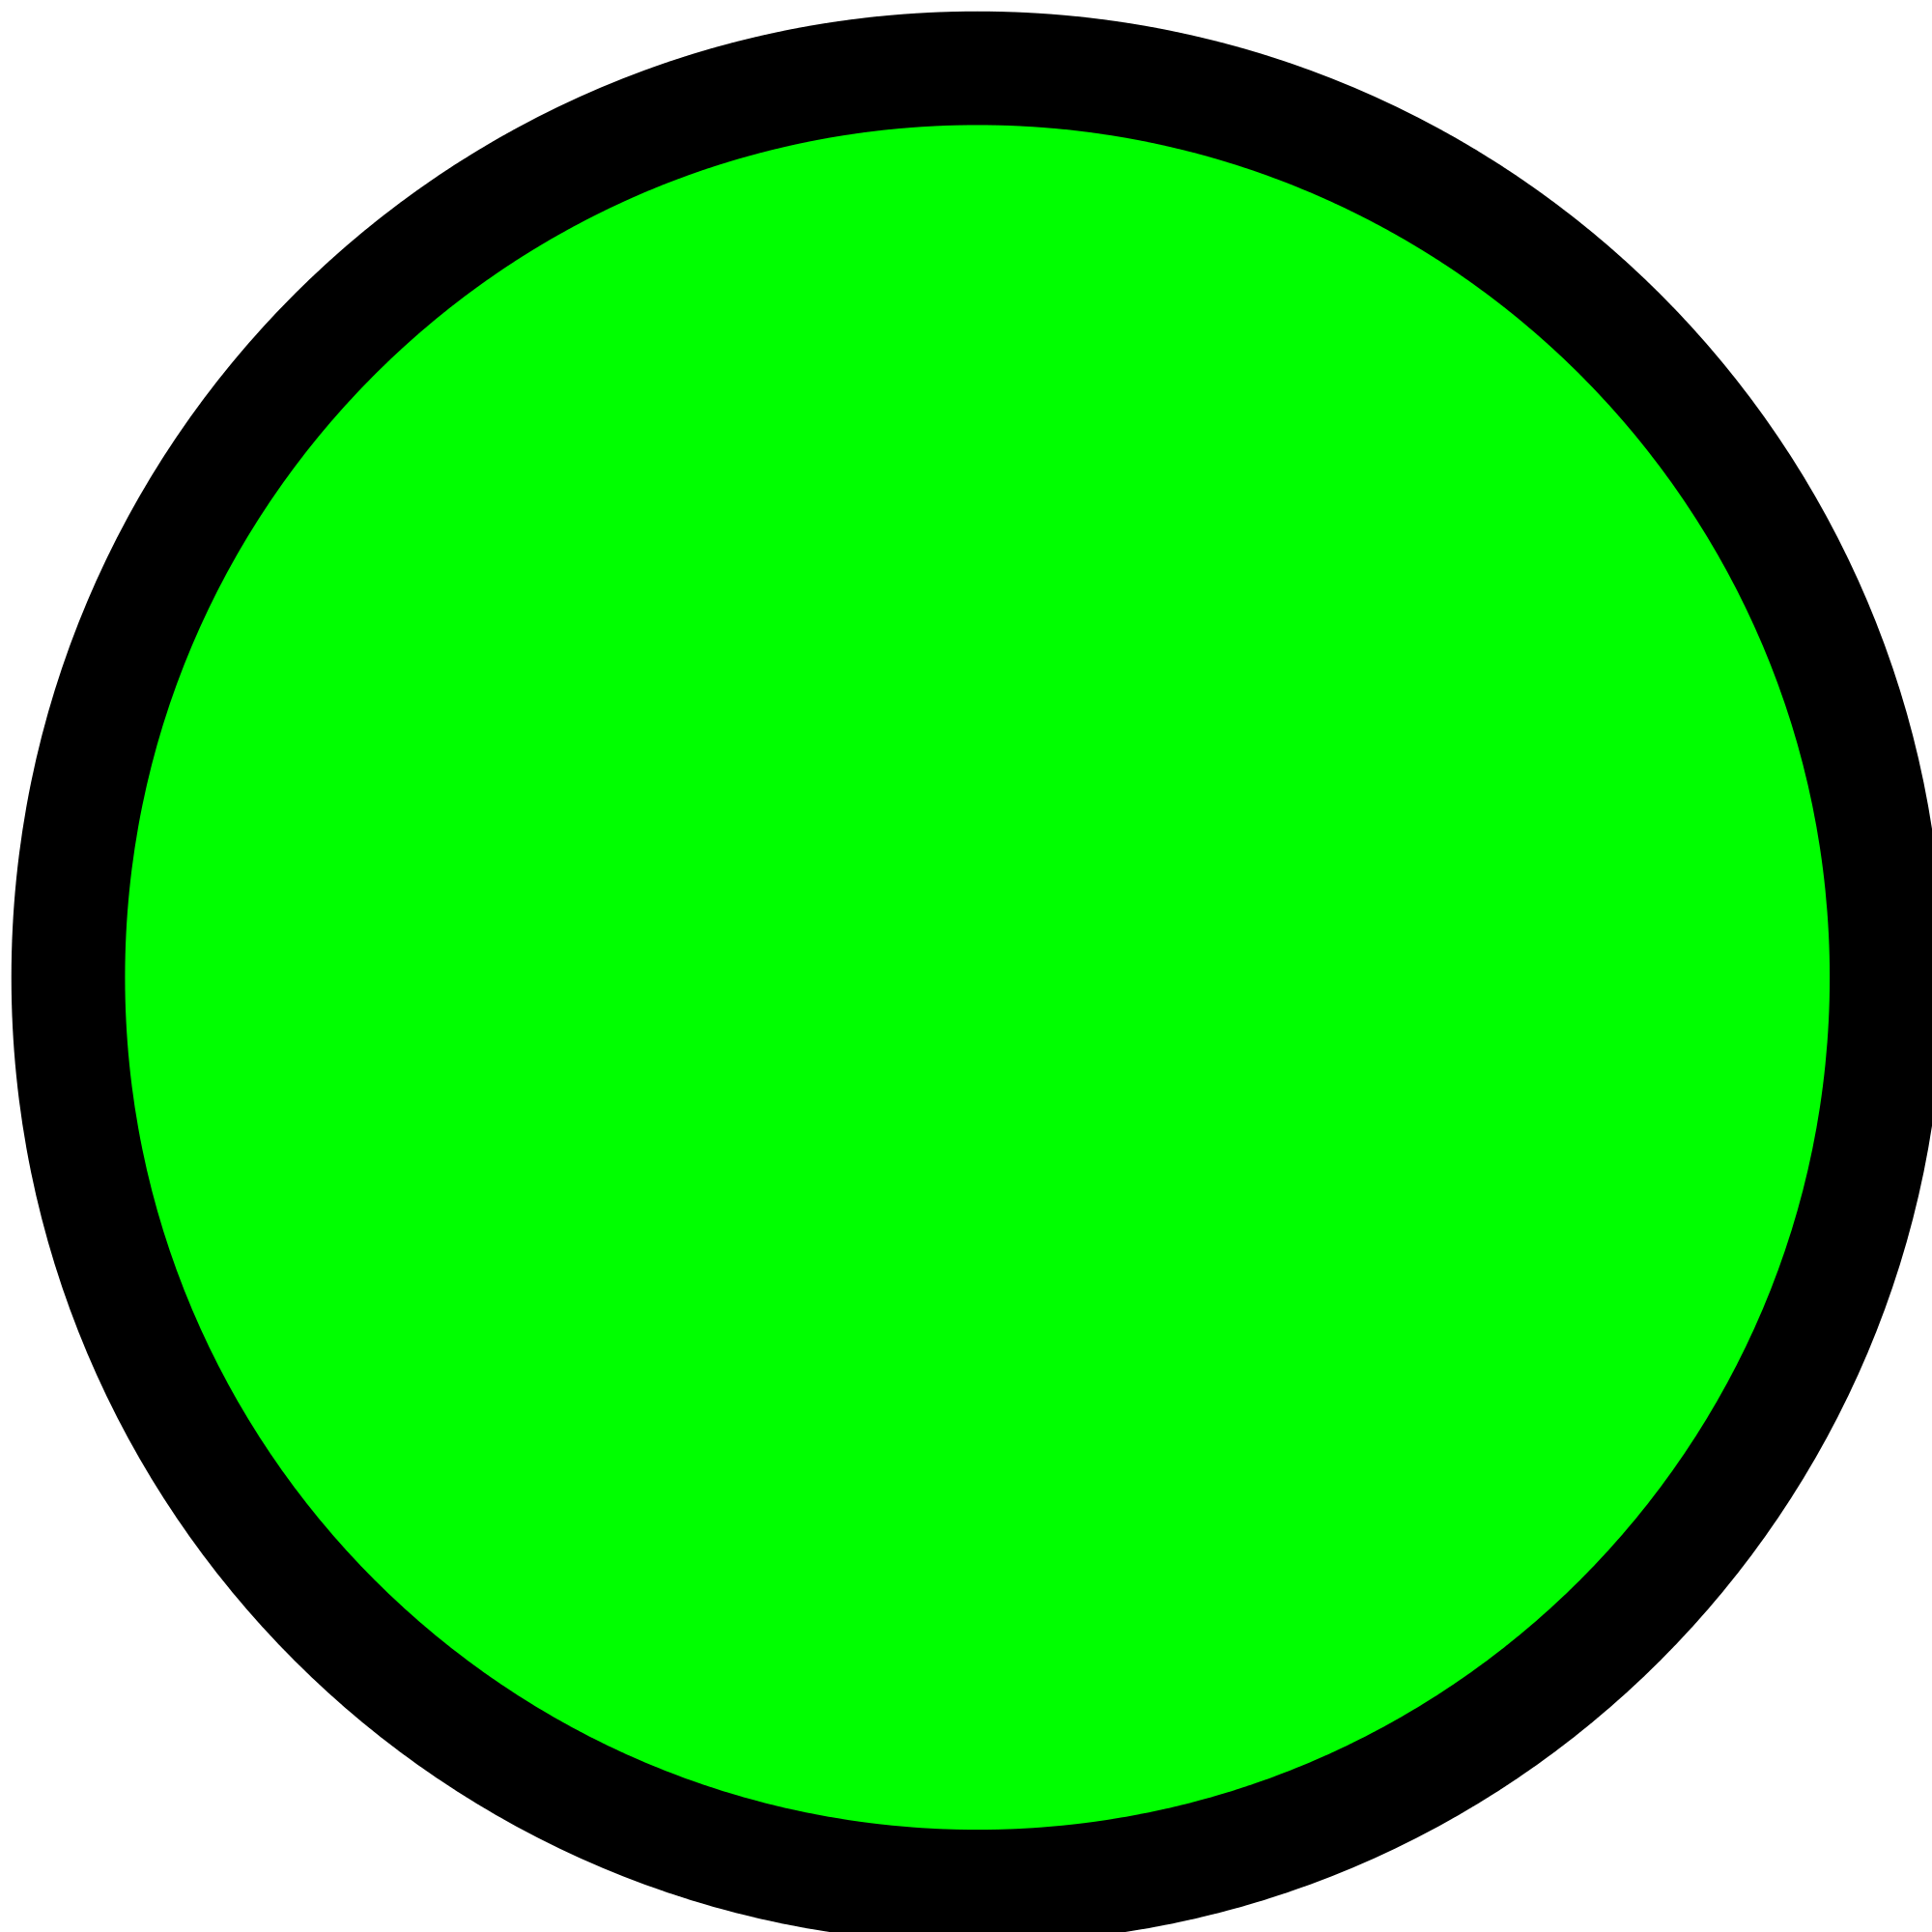 Black and Green Circular Logo - File:Circle-green.svg - Wikimedia Commons